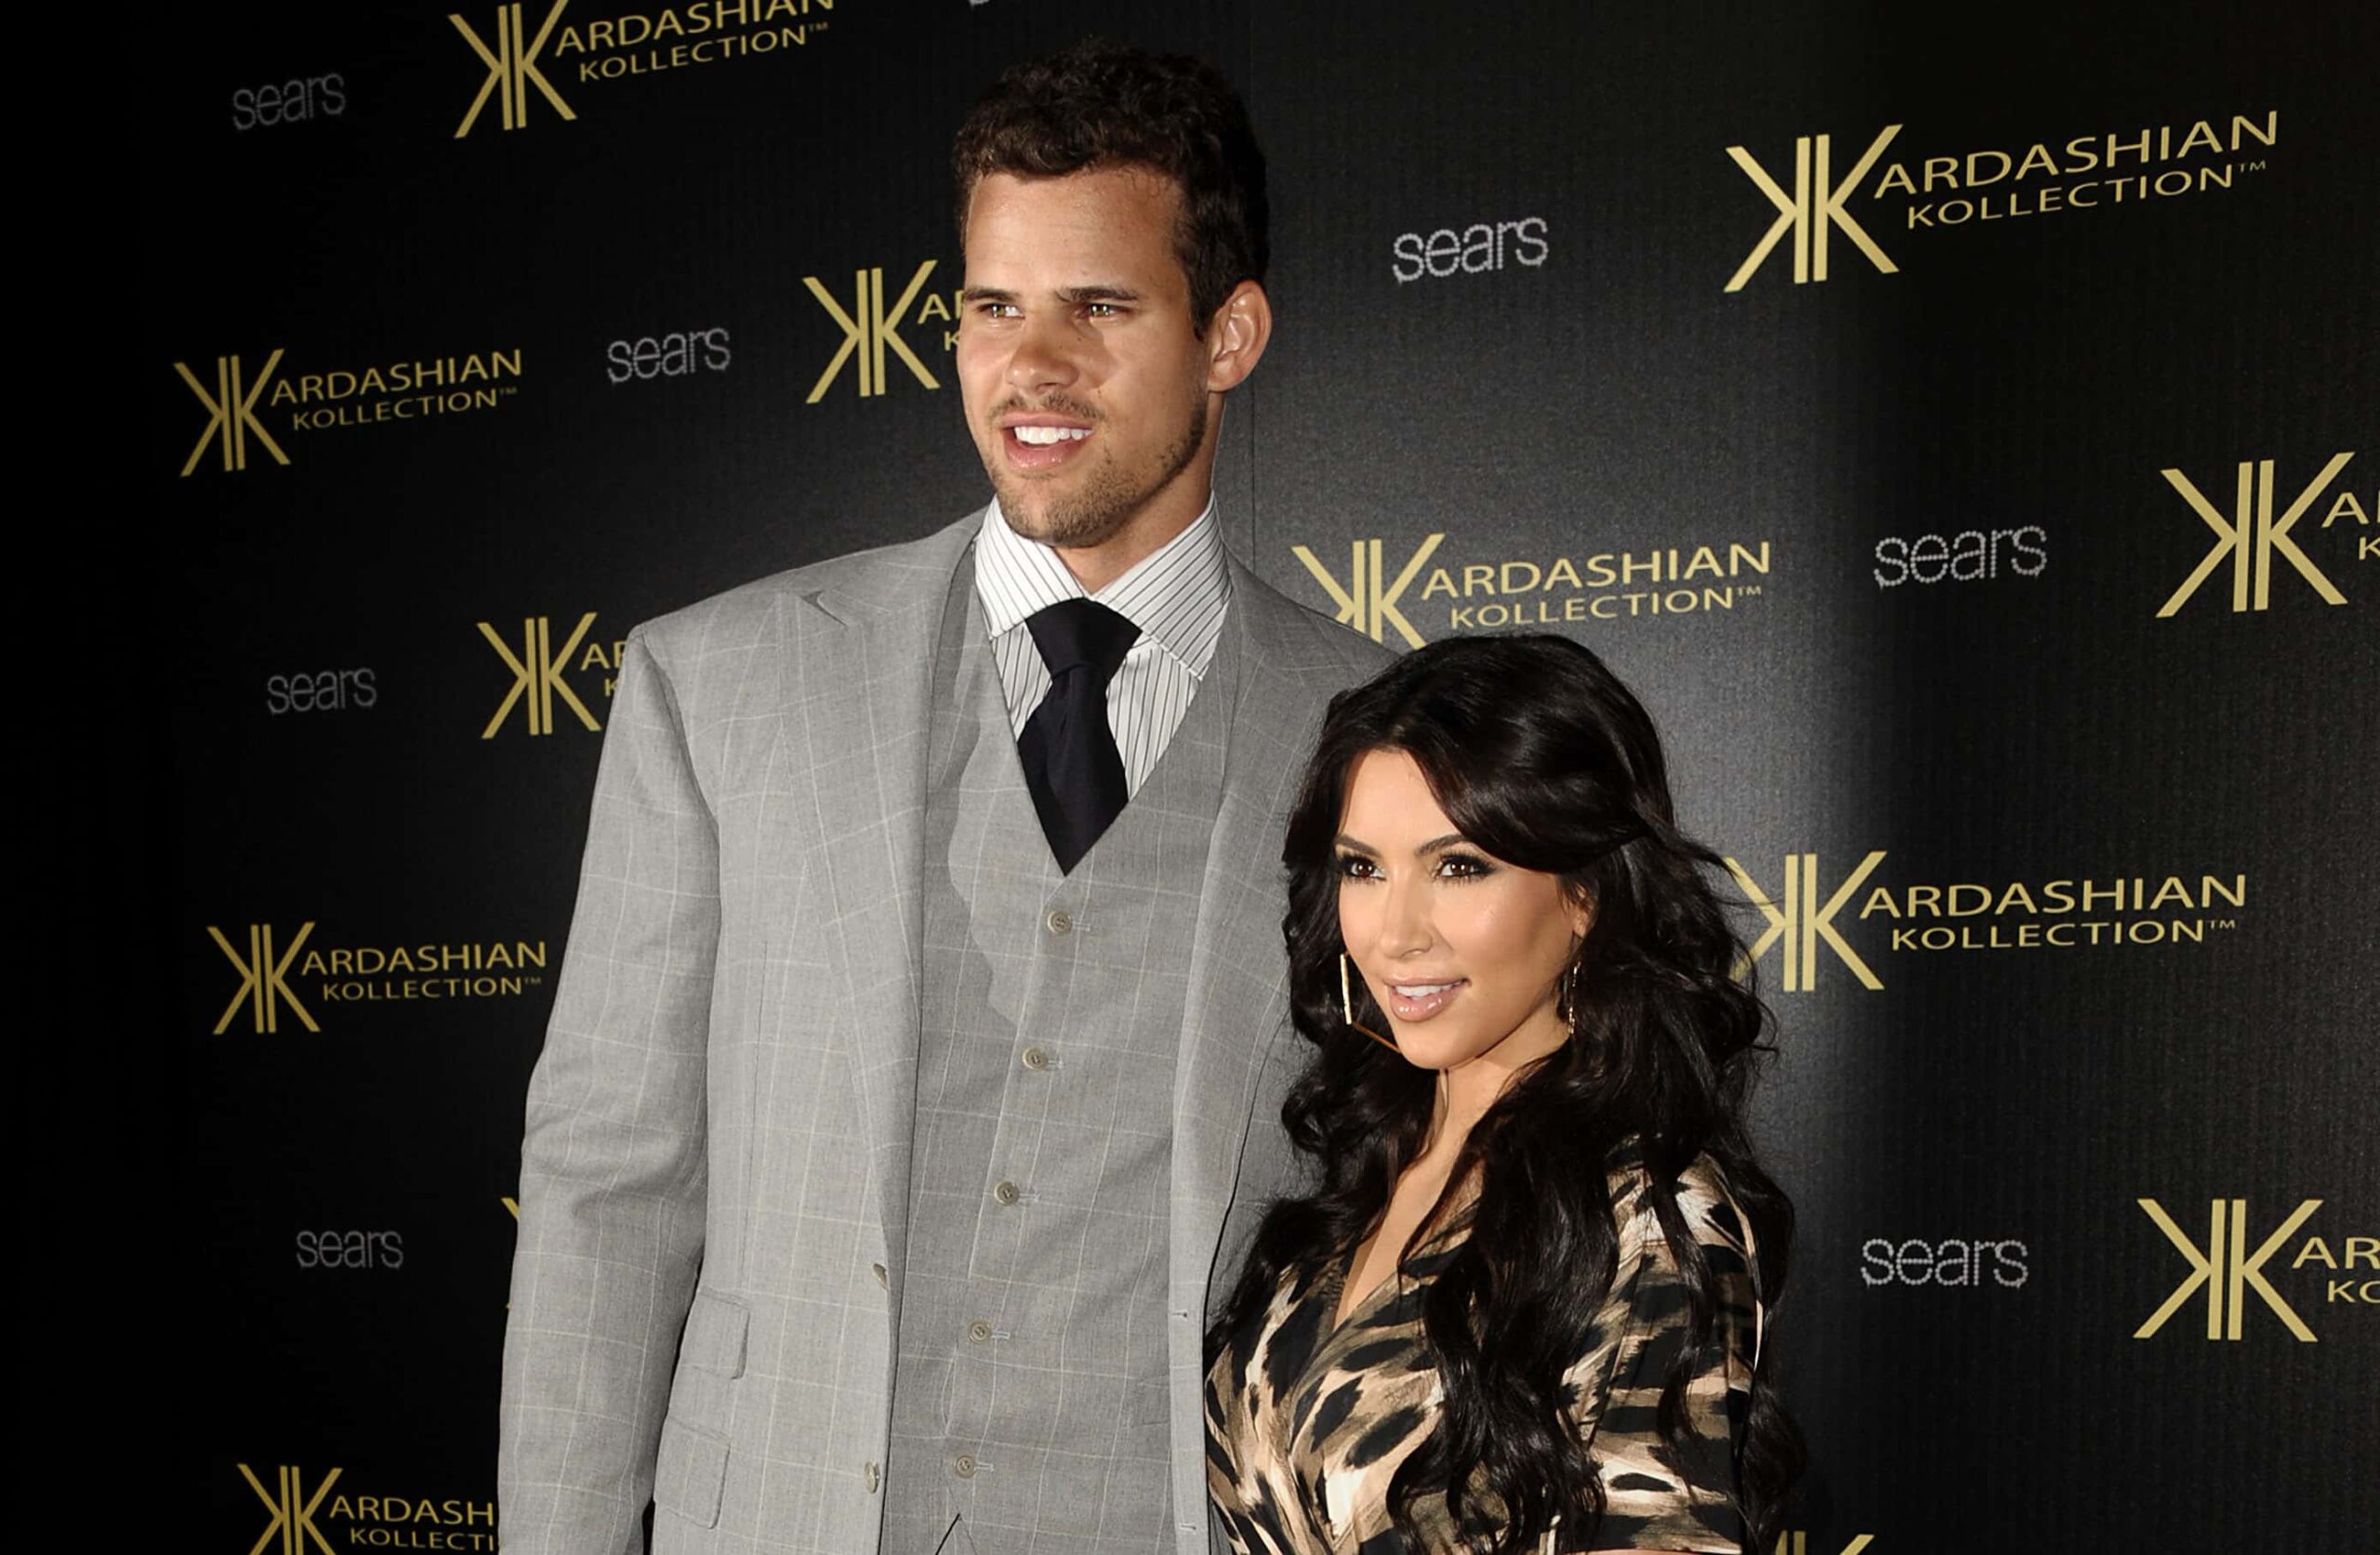 Did Kim Kardashian Stage Her Bora Bora Diamond Earring Drama? Inside the Controversial Episode